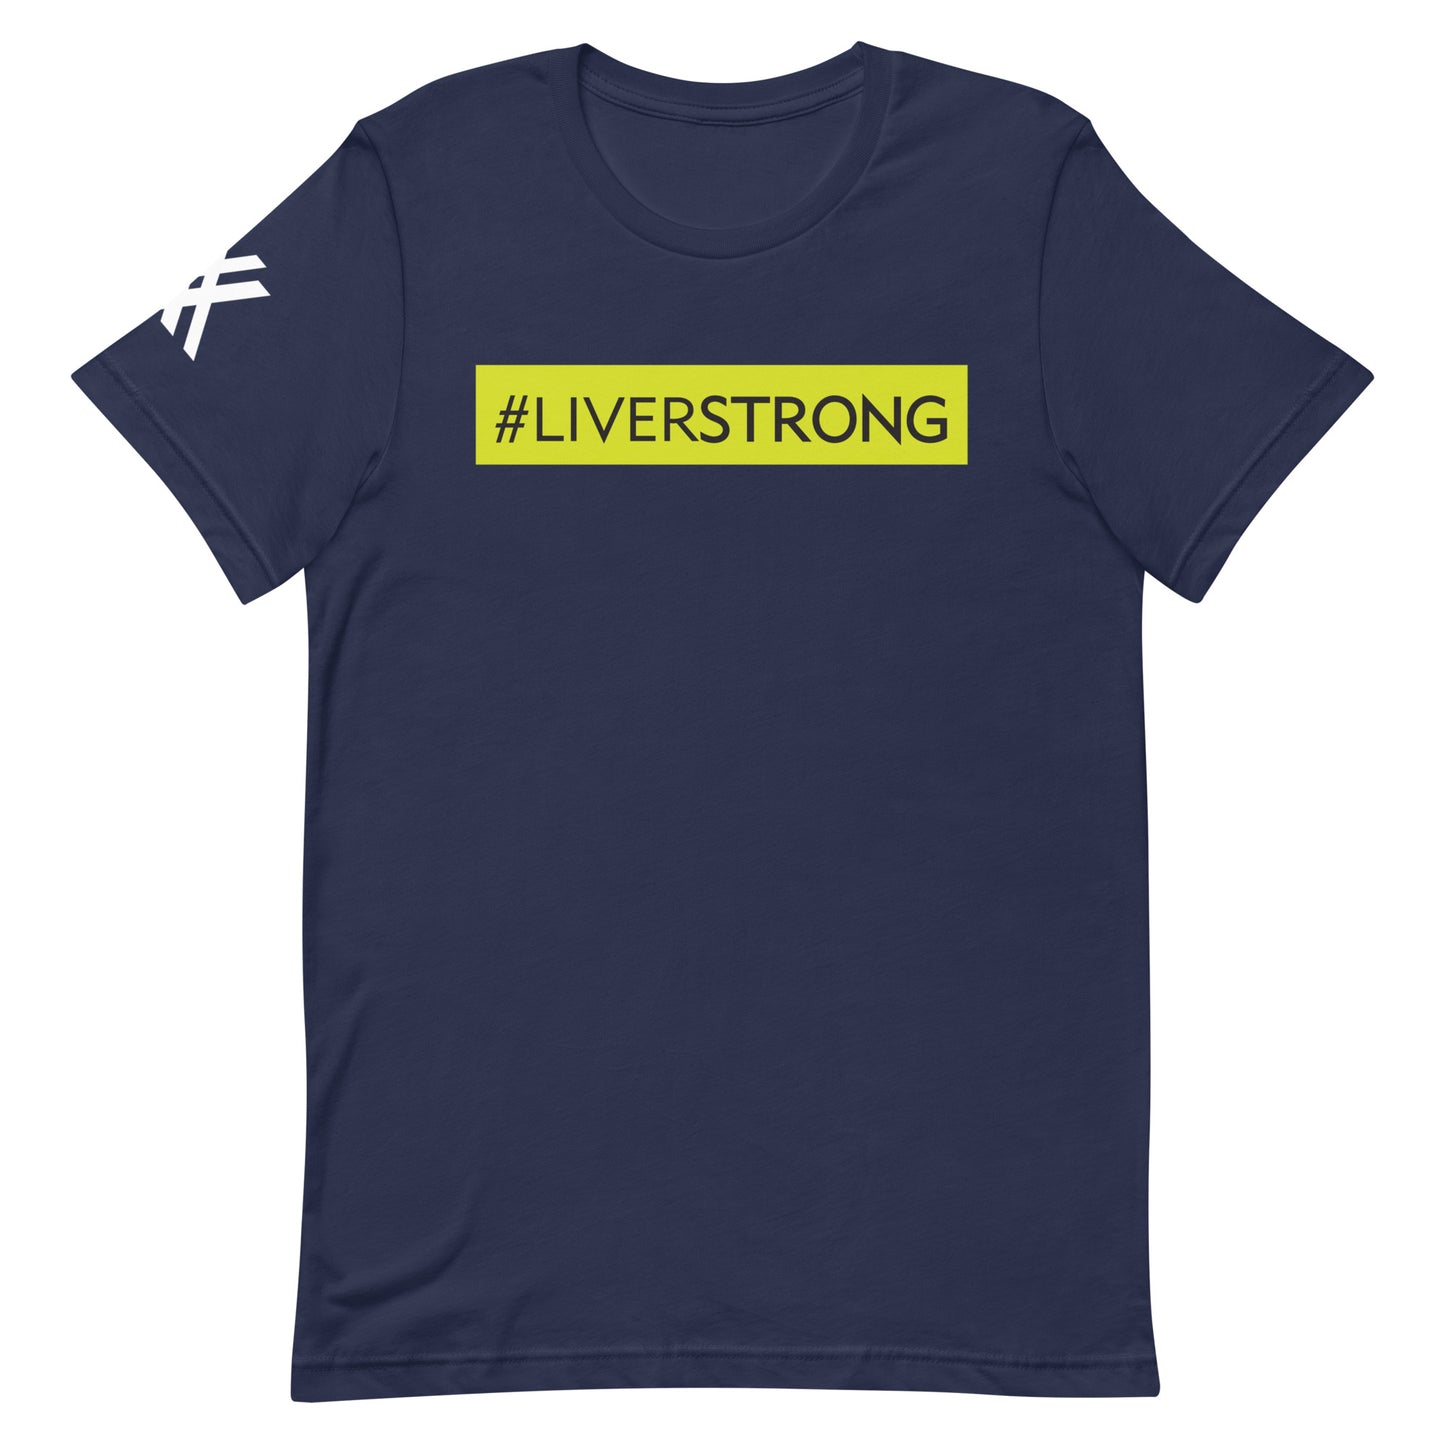 #LIVERSTRONG Short-Sleeve Unisex T-Shirt